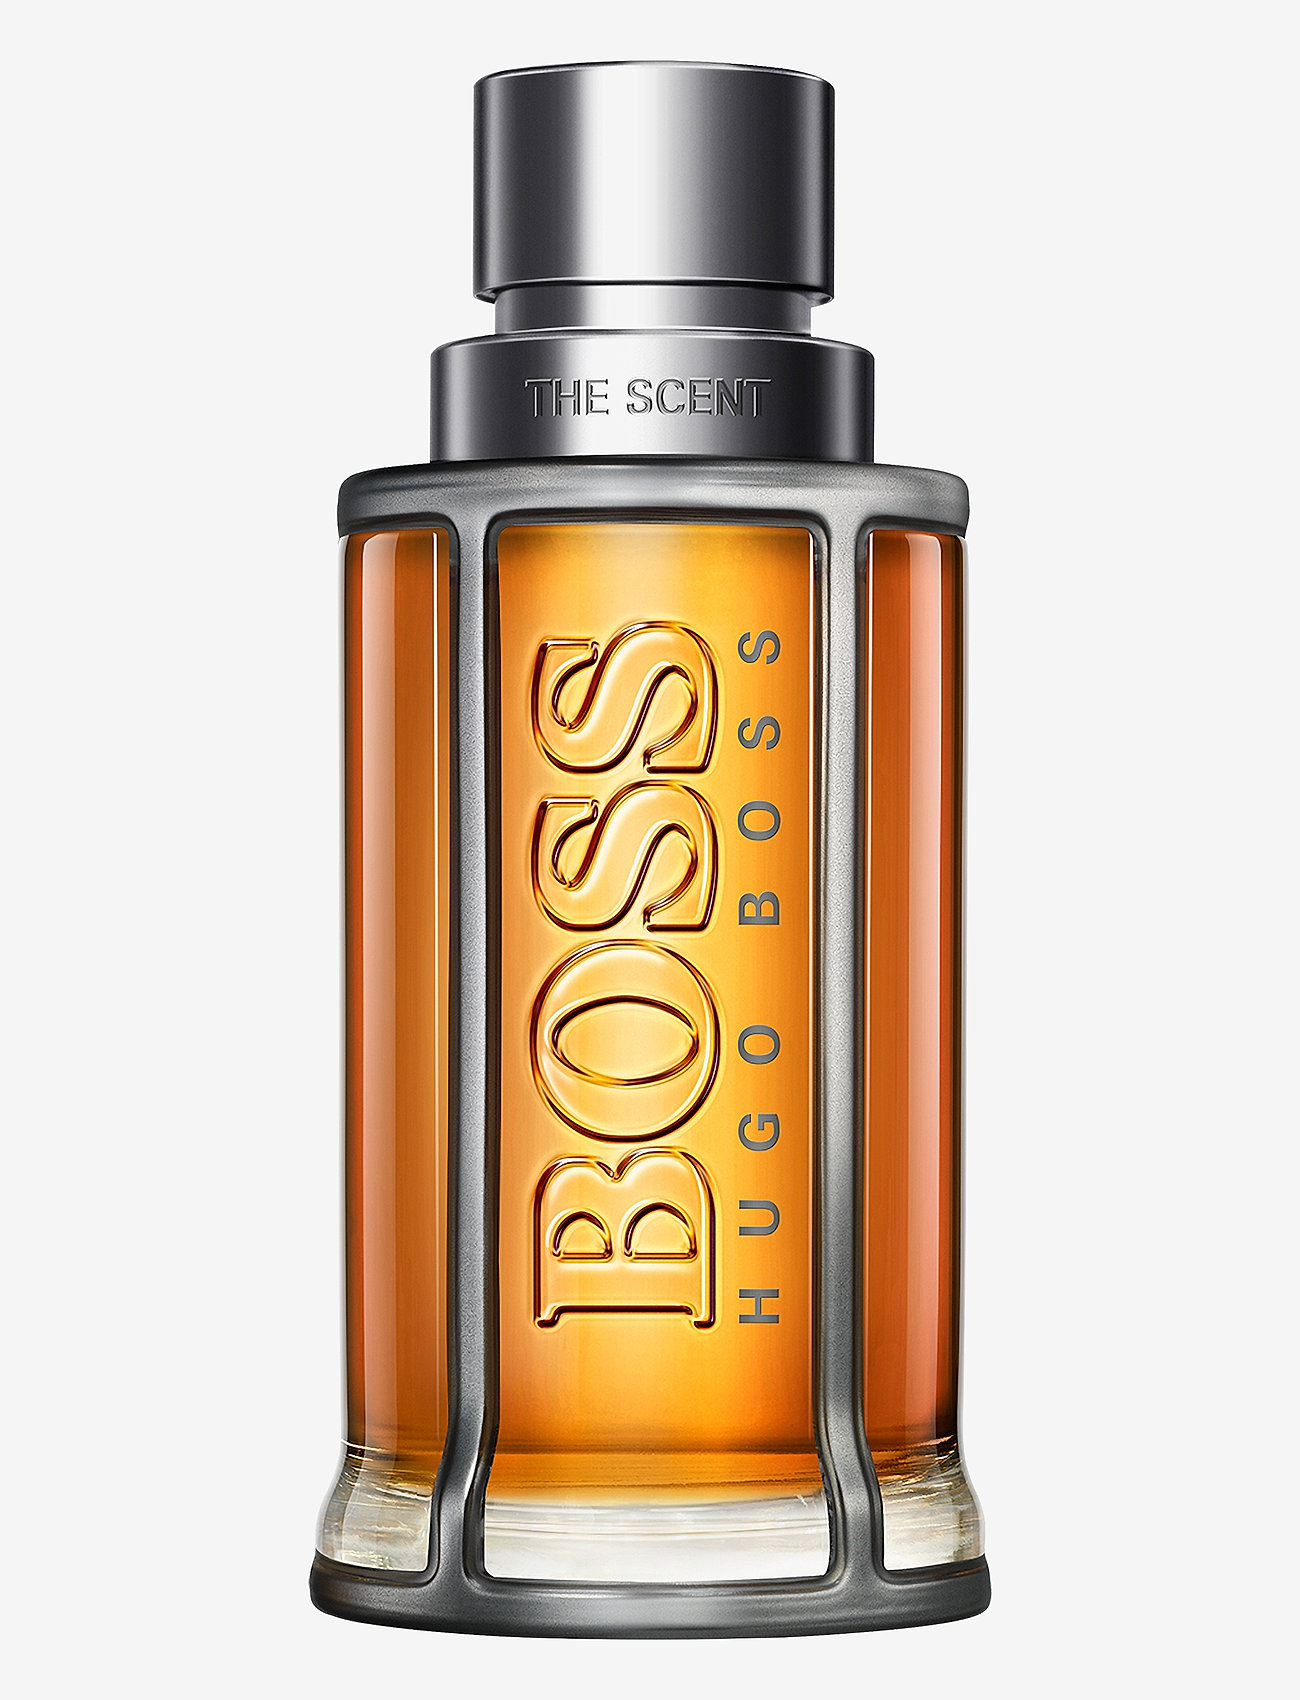 Hugo Boss Fragrance - THE SCENT EAU DE TOILETTE - Över 1000 kr - no color - 0